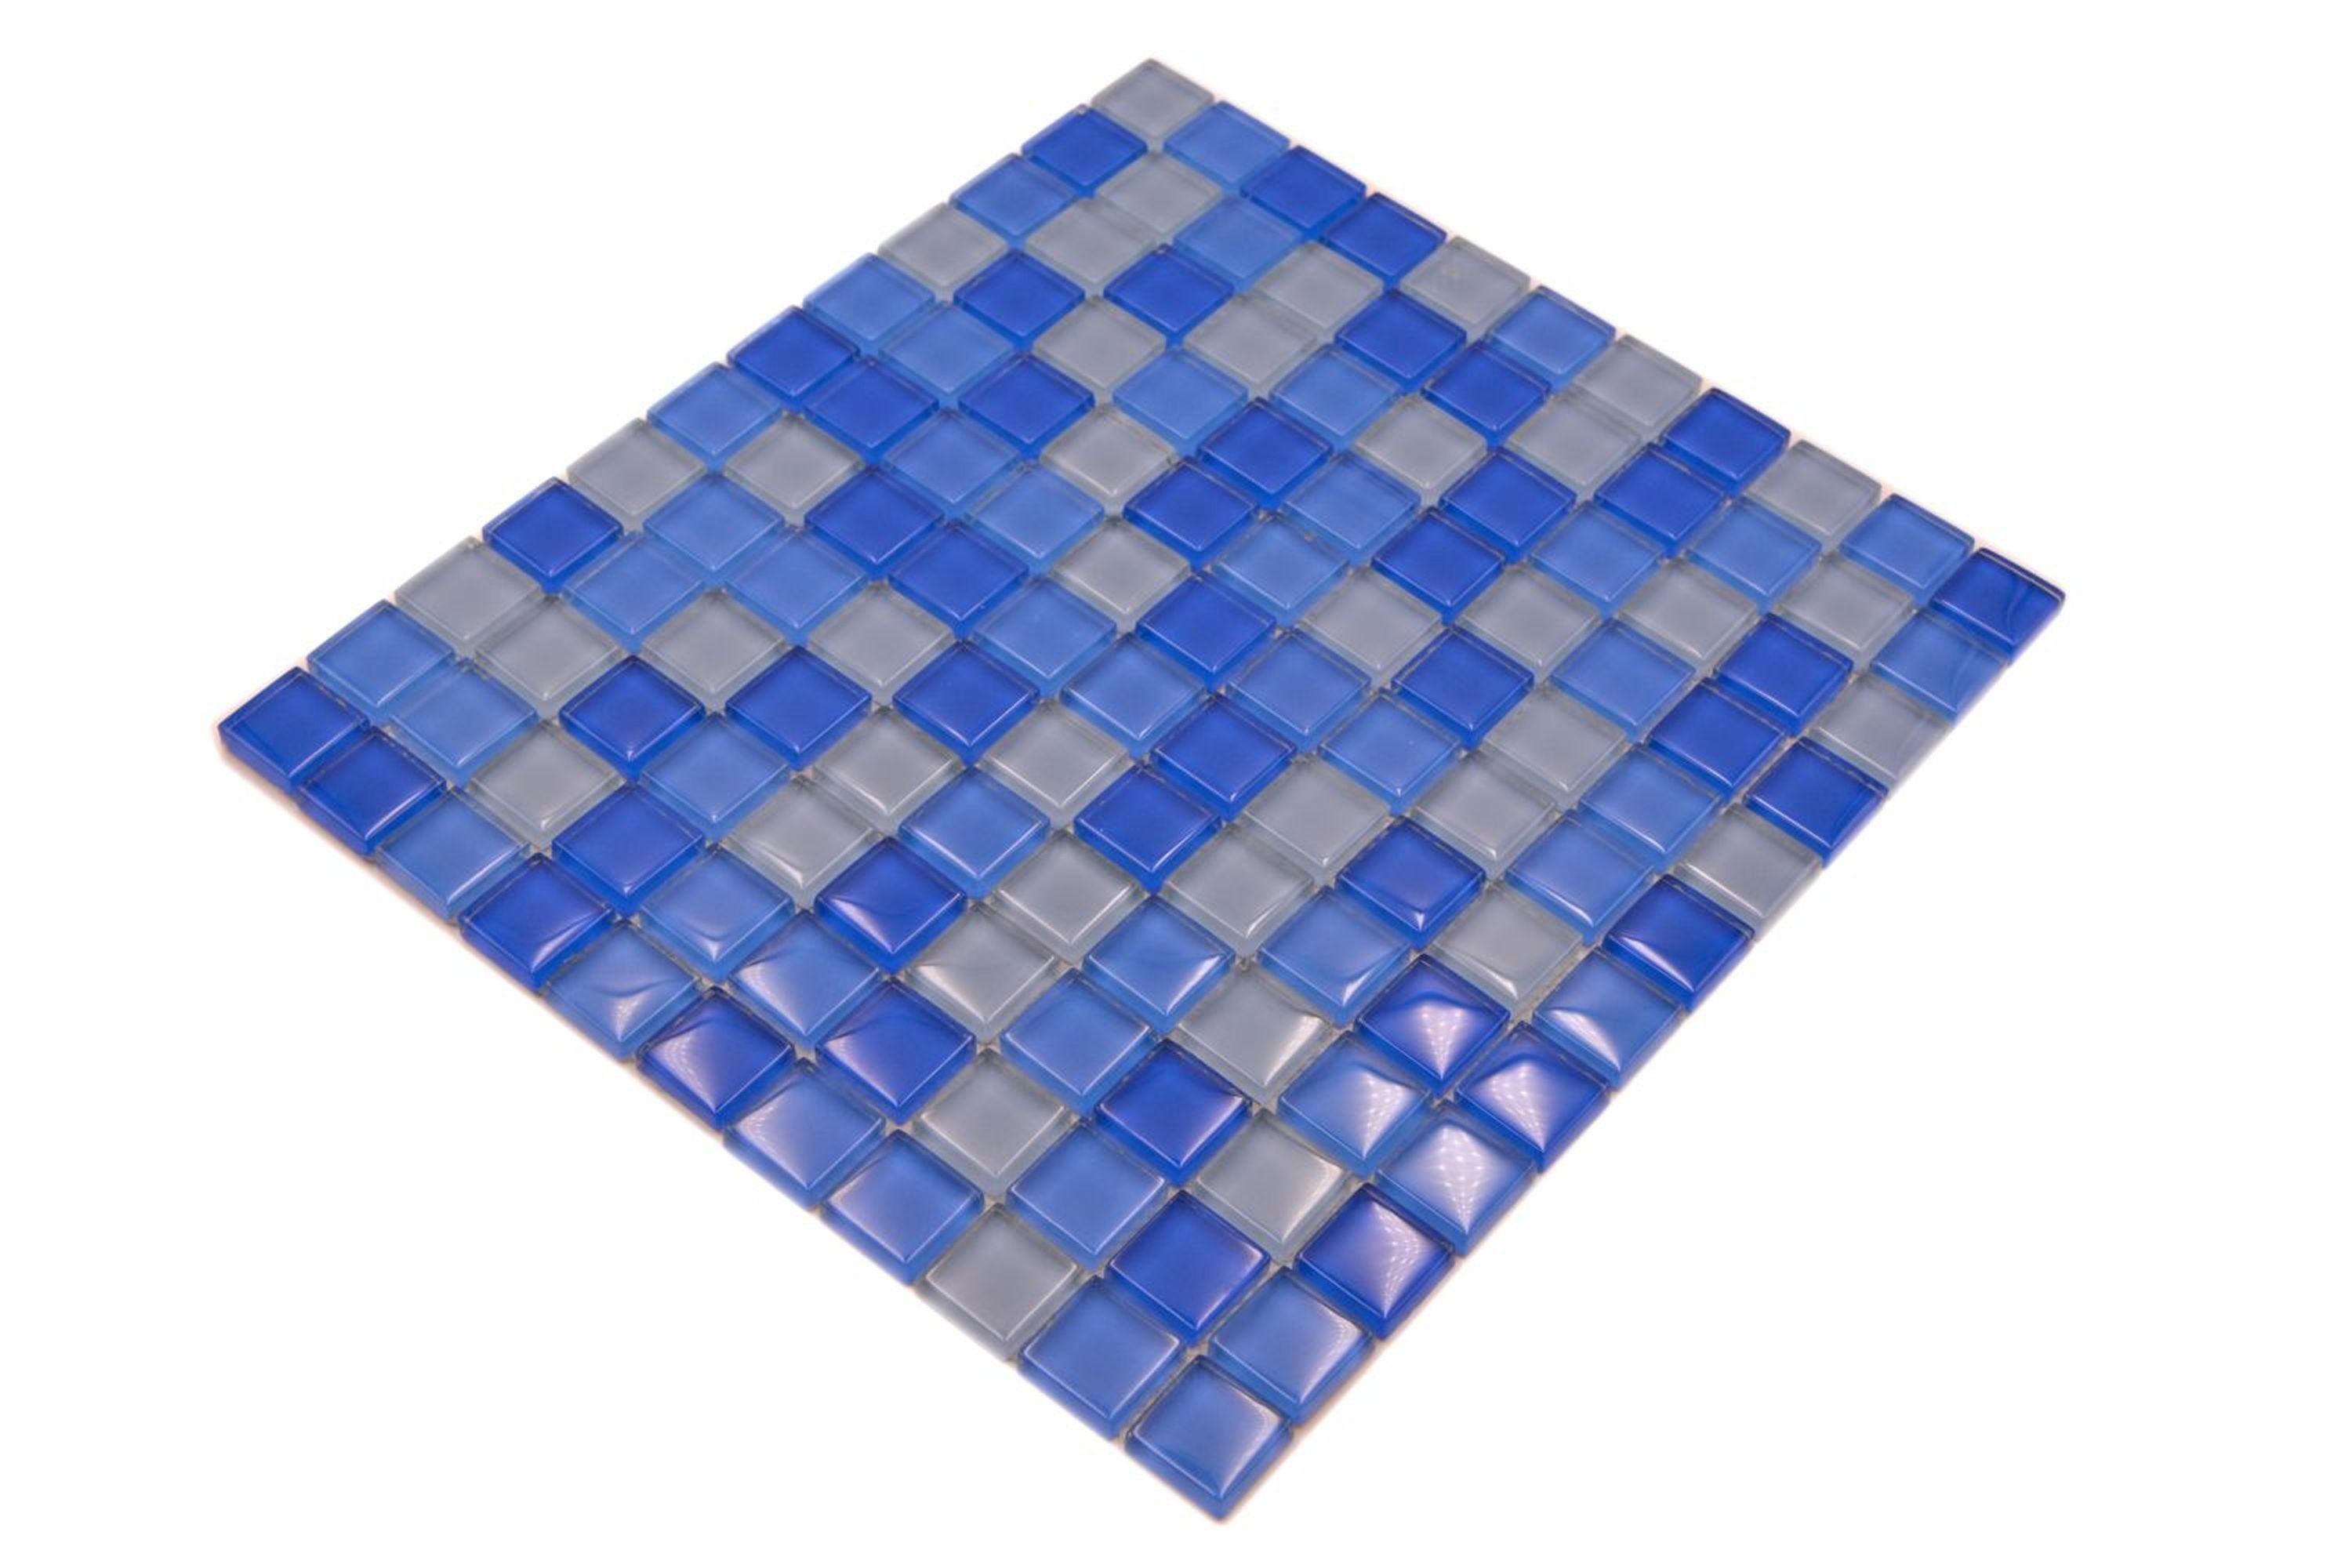 Mosani Mosaikfliesen BAD Küche Glasmosaik WC mittelblau Mosaikfliesen hellblau